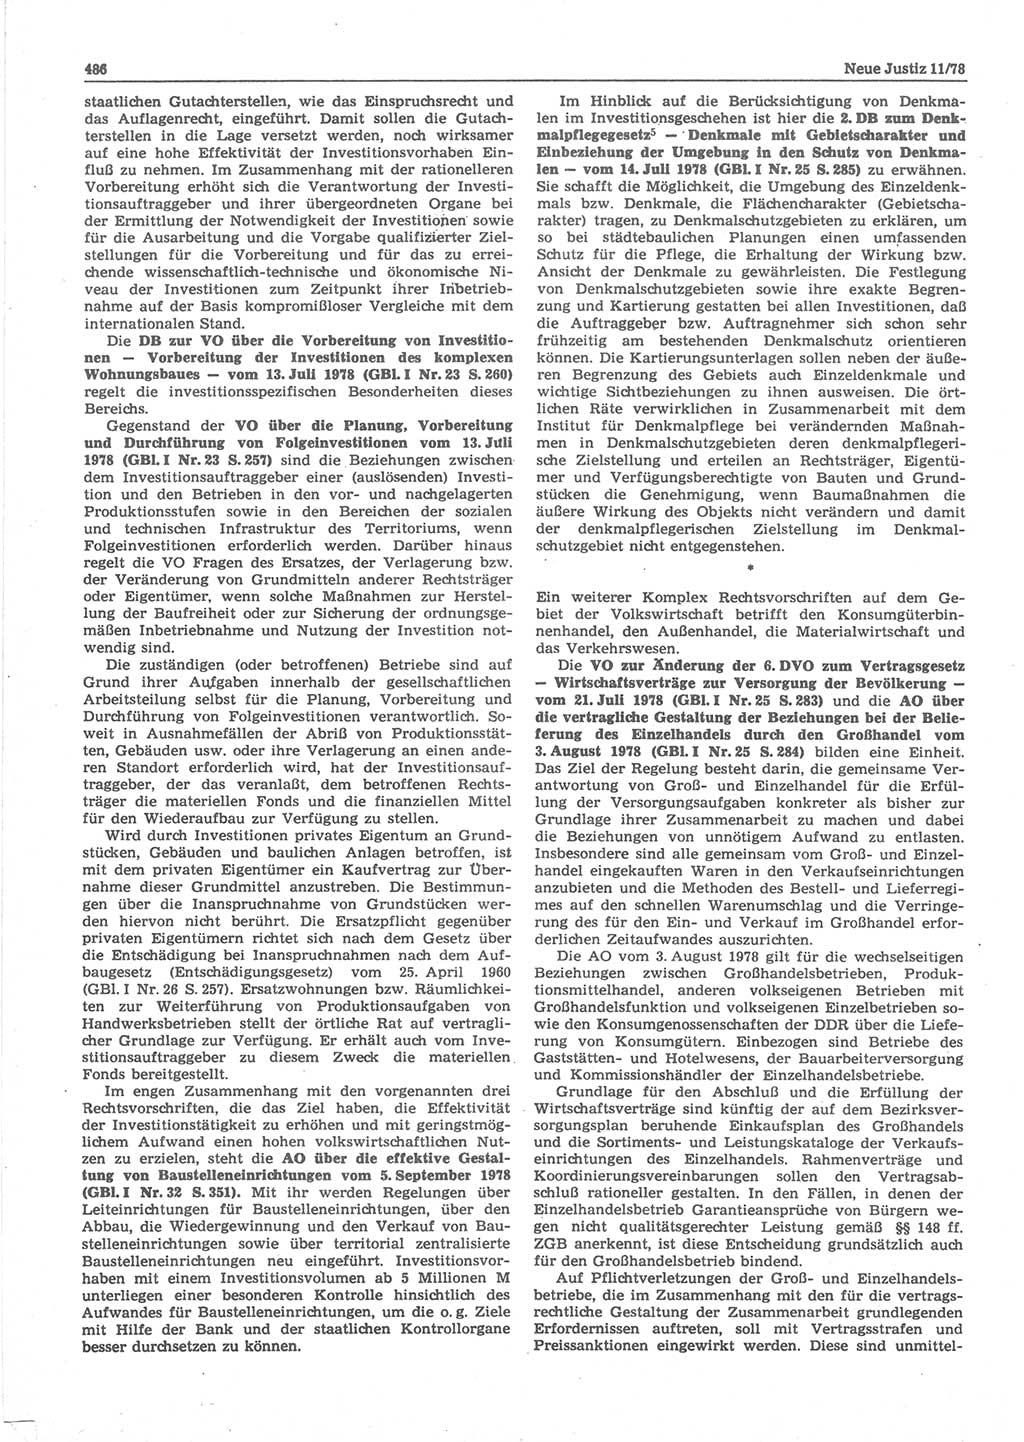 Neue Justiz (NJ), Zeitschrift für sozialistisches Recht und Gesetzlichkeit [Deutsche Demokratische Republik (DDR)], 32. Jahrgang 1978, Seite 486 (NJ DDR 1978, S. 486)